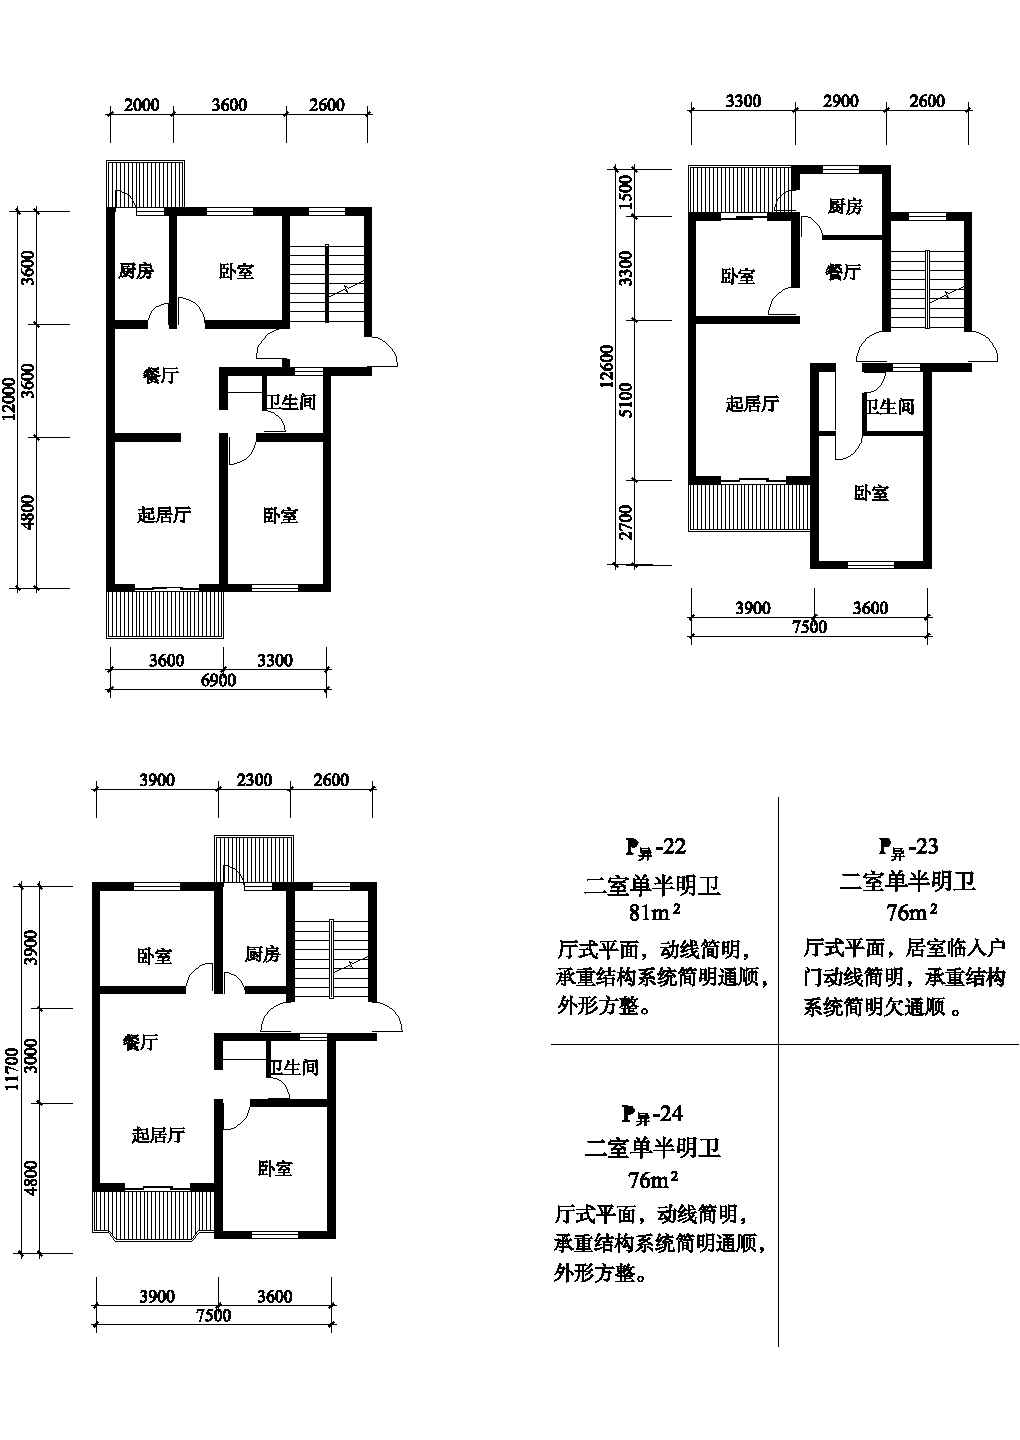 二室81/7676平方单元式住宅平面图纸